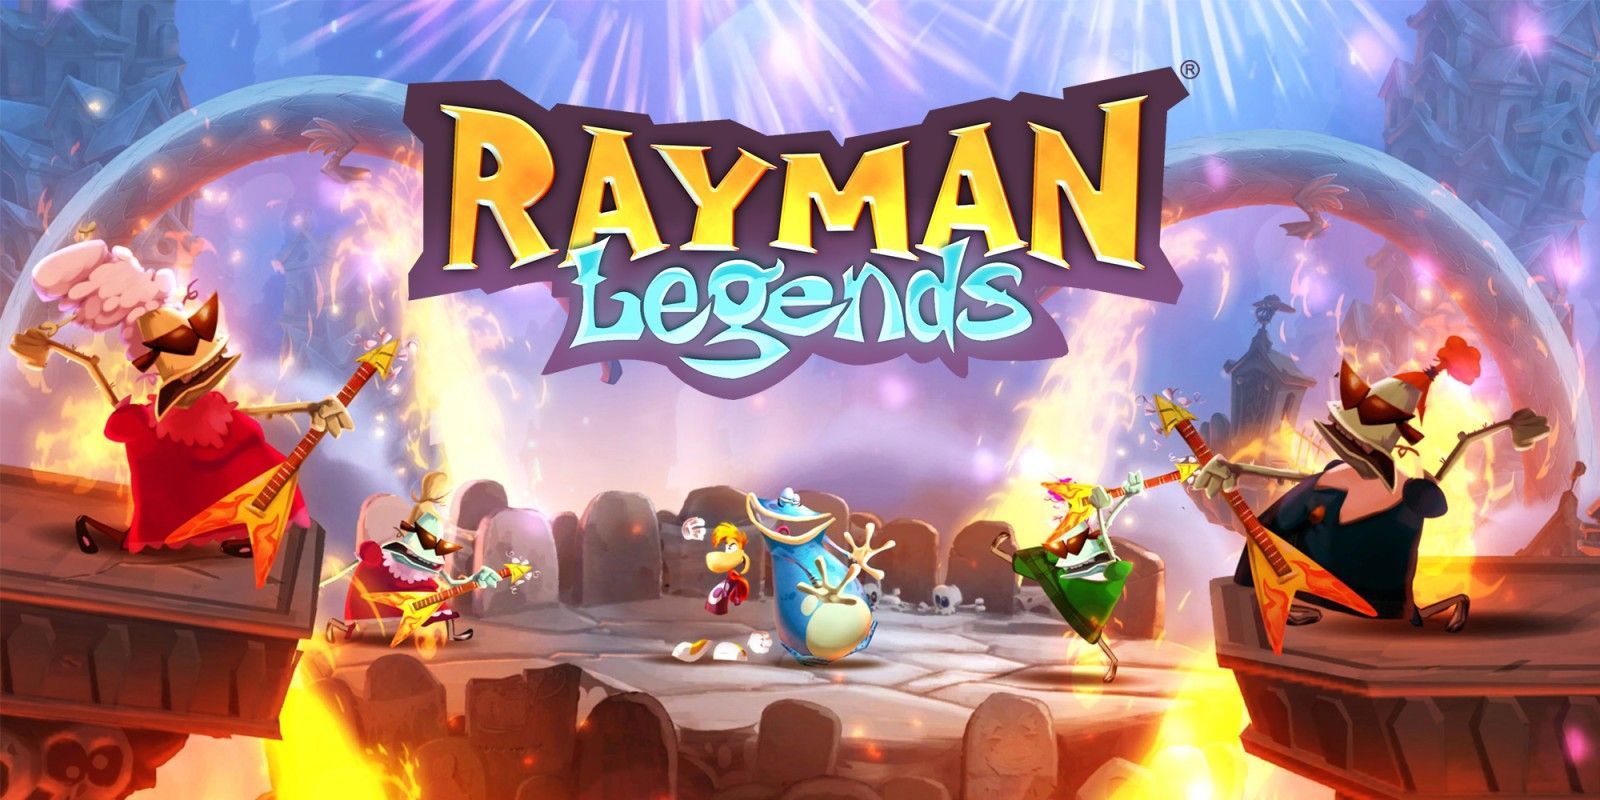 [MAJ] Rayman Legends : les serveurs en ligne indisponibles depuis plusieurs jours sur PS Vita - Planète Vita